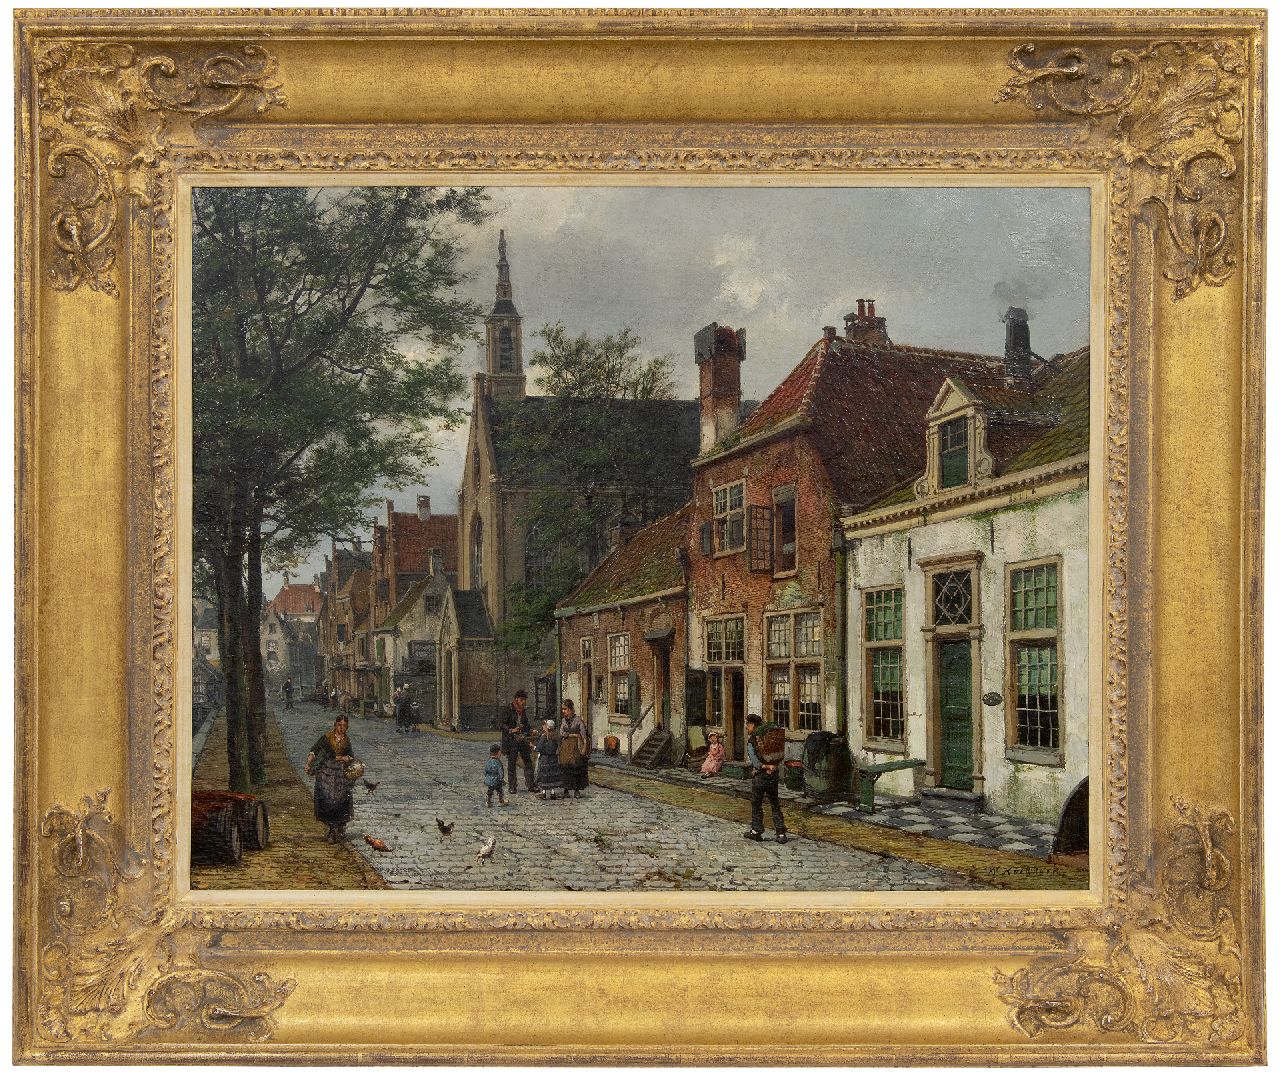 Koekkoek W.  | Willem Koekkoek, View in a Dutch town, oil on canvas 54.6 x 69.9 cm, signed l.r.